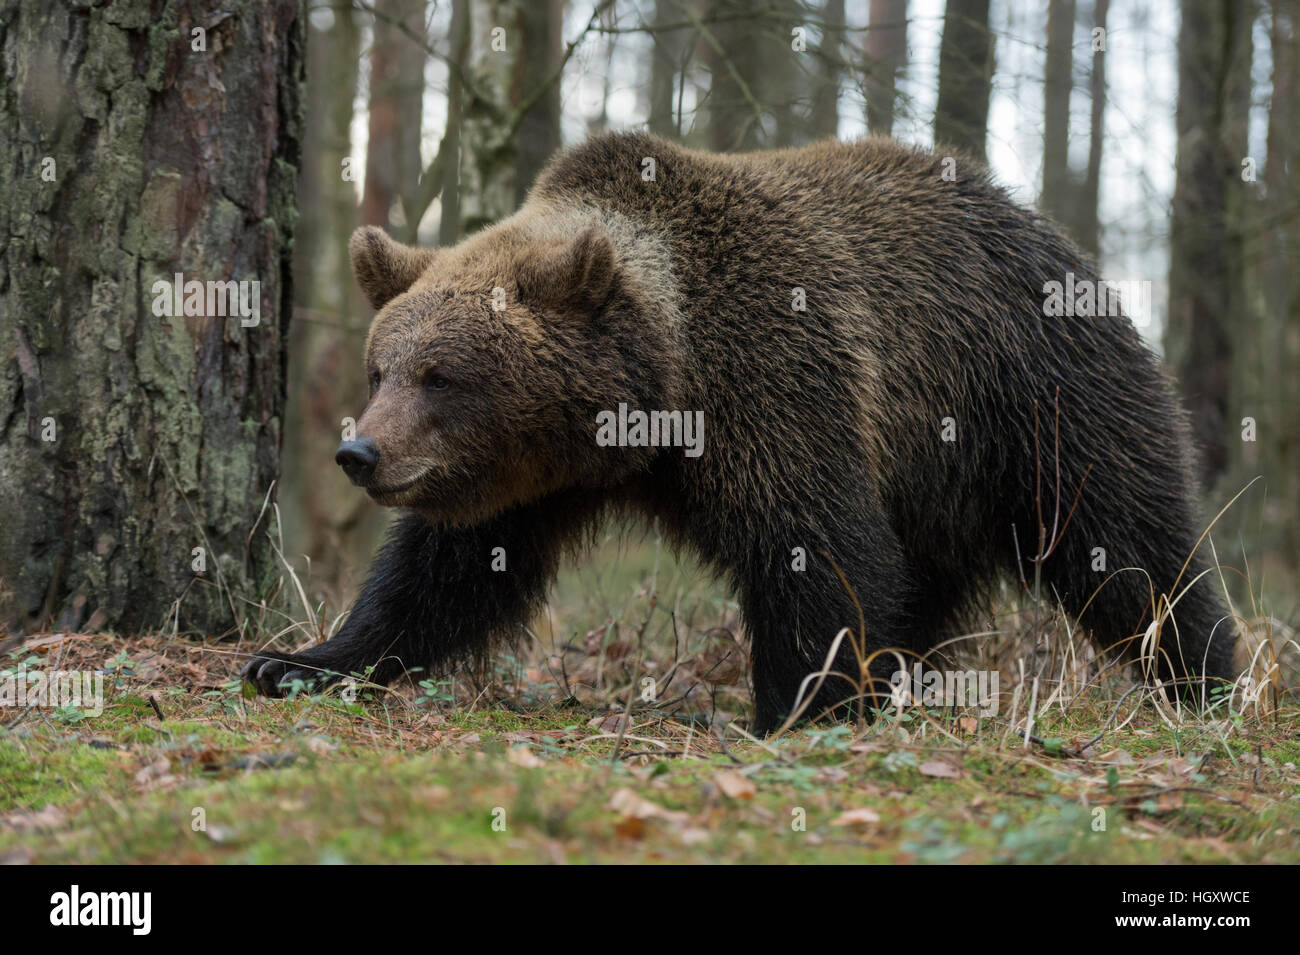 Unione orso bruno / Braunbaer ( Ursus arctos ) a piedi attraverso una foresta naturale, vista laterale dettagliata, nella tipica posa, forte. Foto Stock